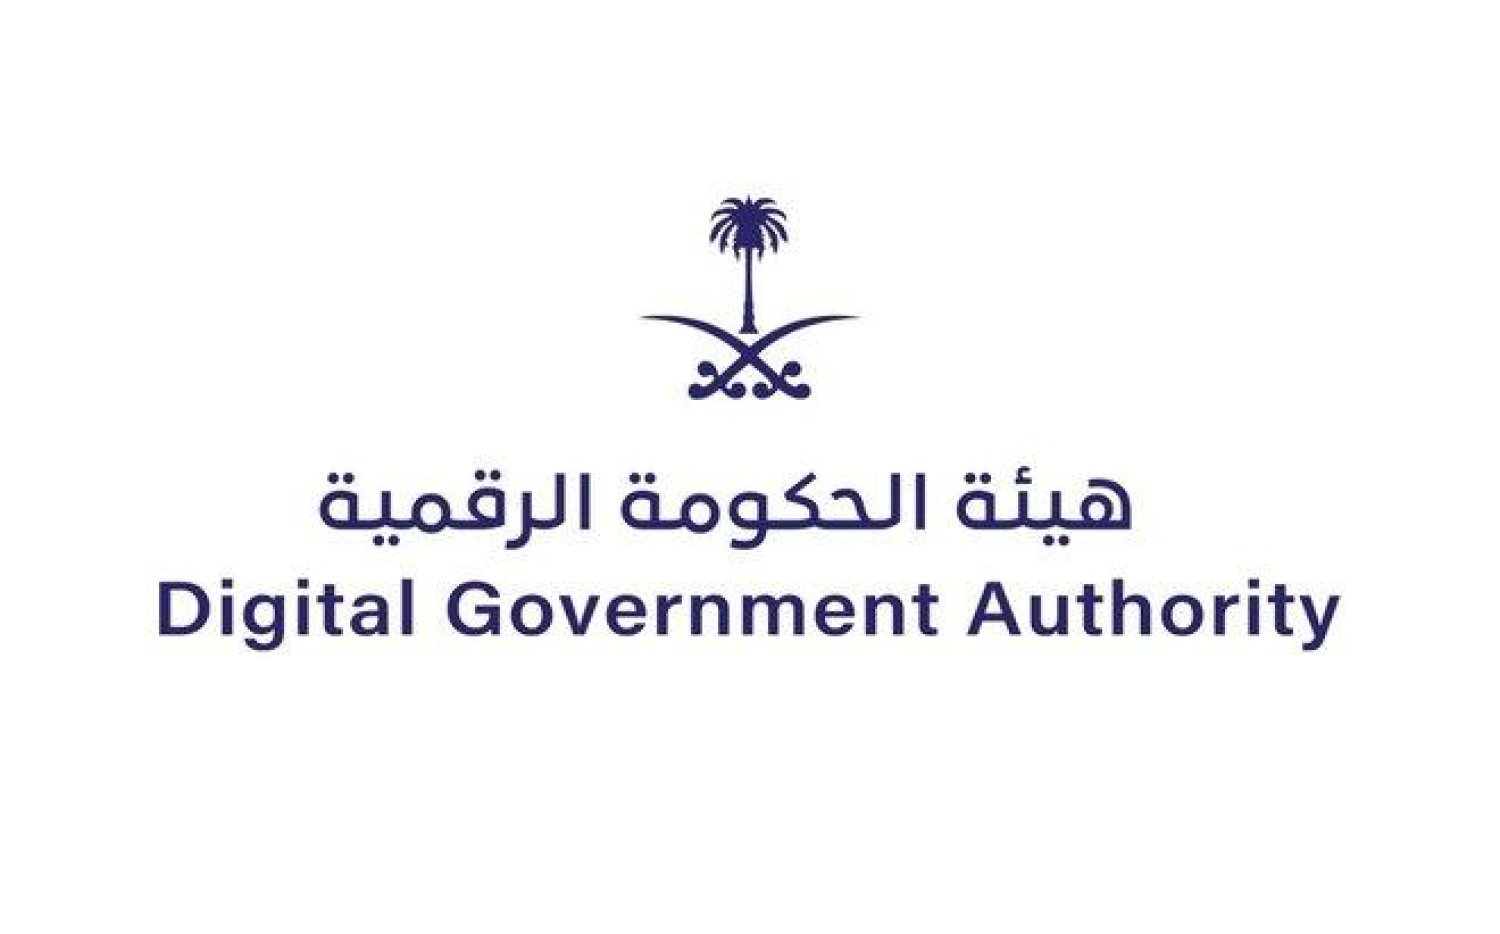 رقم هيئة الحكومة الرقمية في السعودية للتواصل الهاتفي